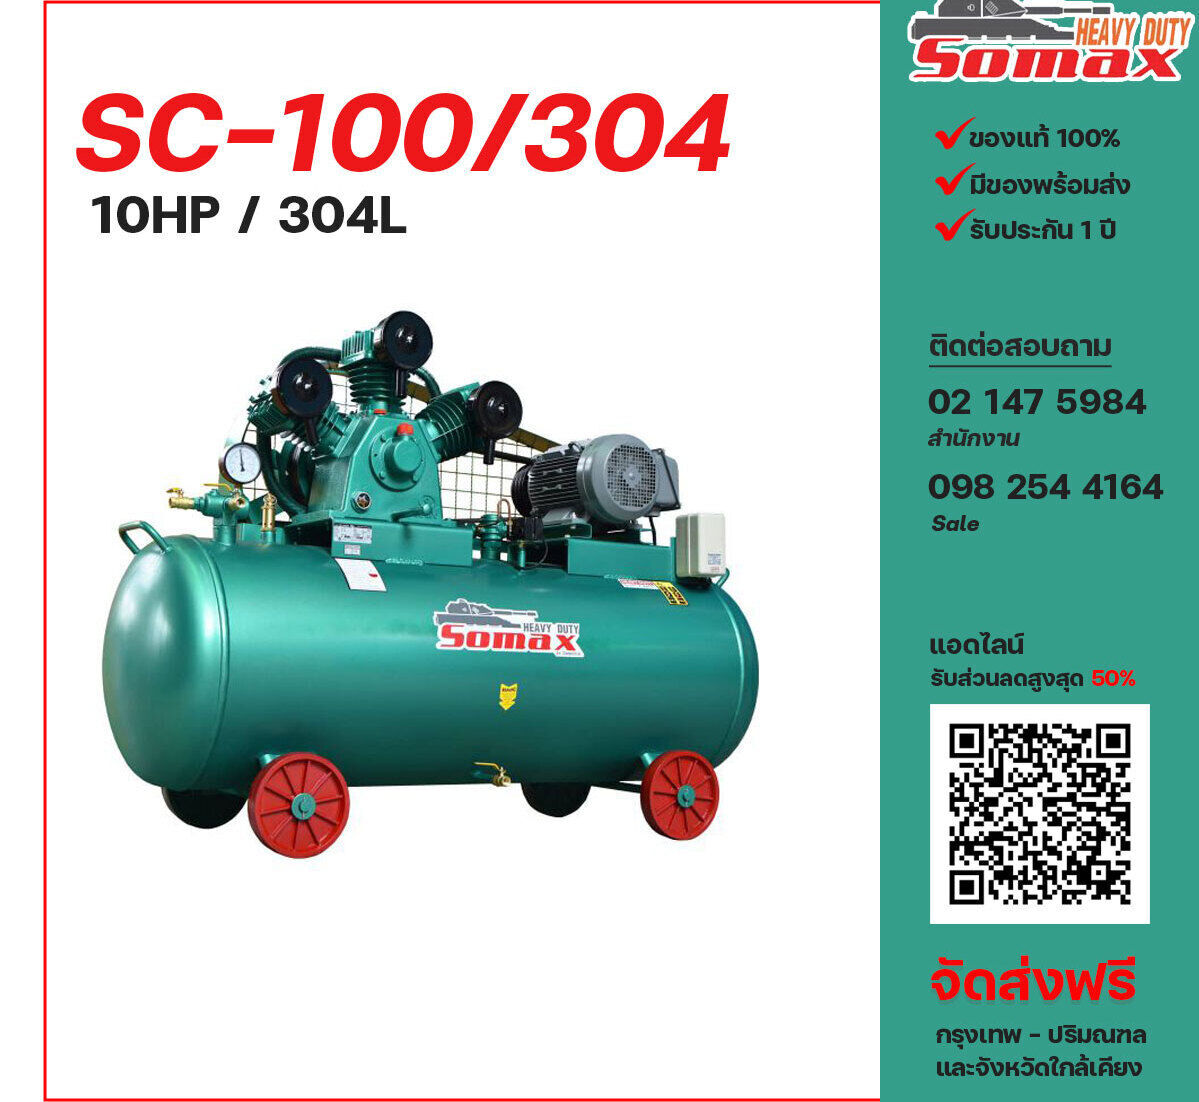 ปั๊มลมโซแม็กซ์ SOMAX SC-100/304 380V ปั๊มลมลูกสูบ ขนาด 3 สูบ 10 แรงม้า 304 ลิตร SOMAX พร้อมมอเตอร์ ไฟ 380V ส่งฟรี กรุงเทพฯ-ปริมณฑล รับประกัน 1 ปี